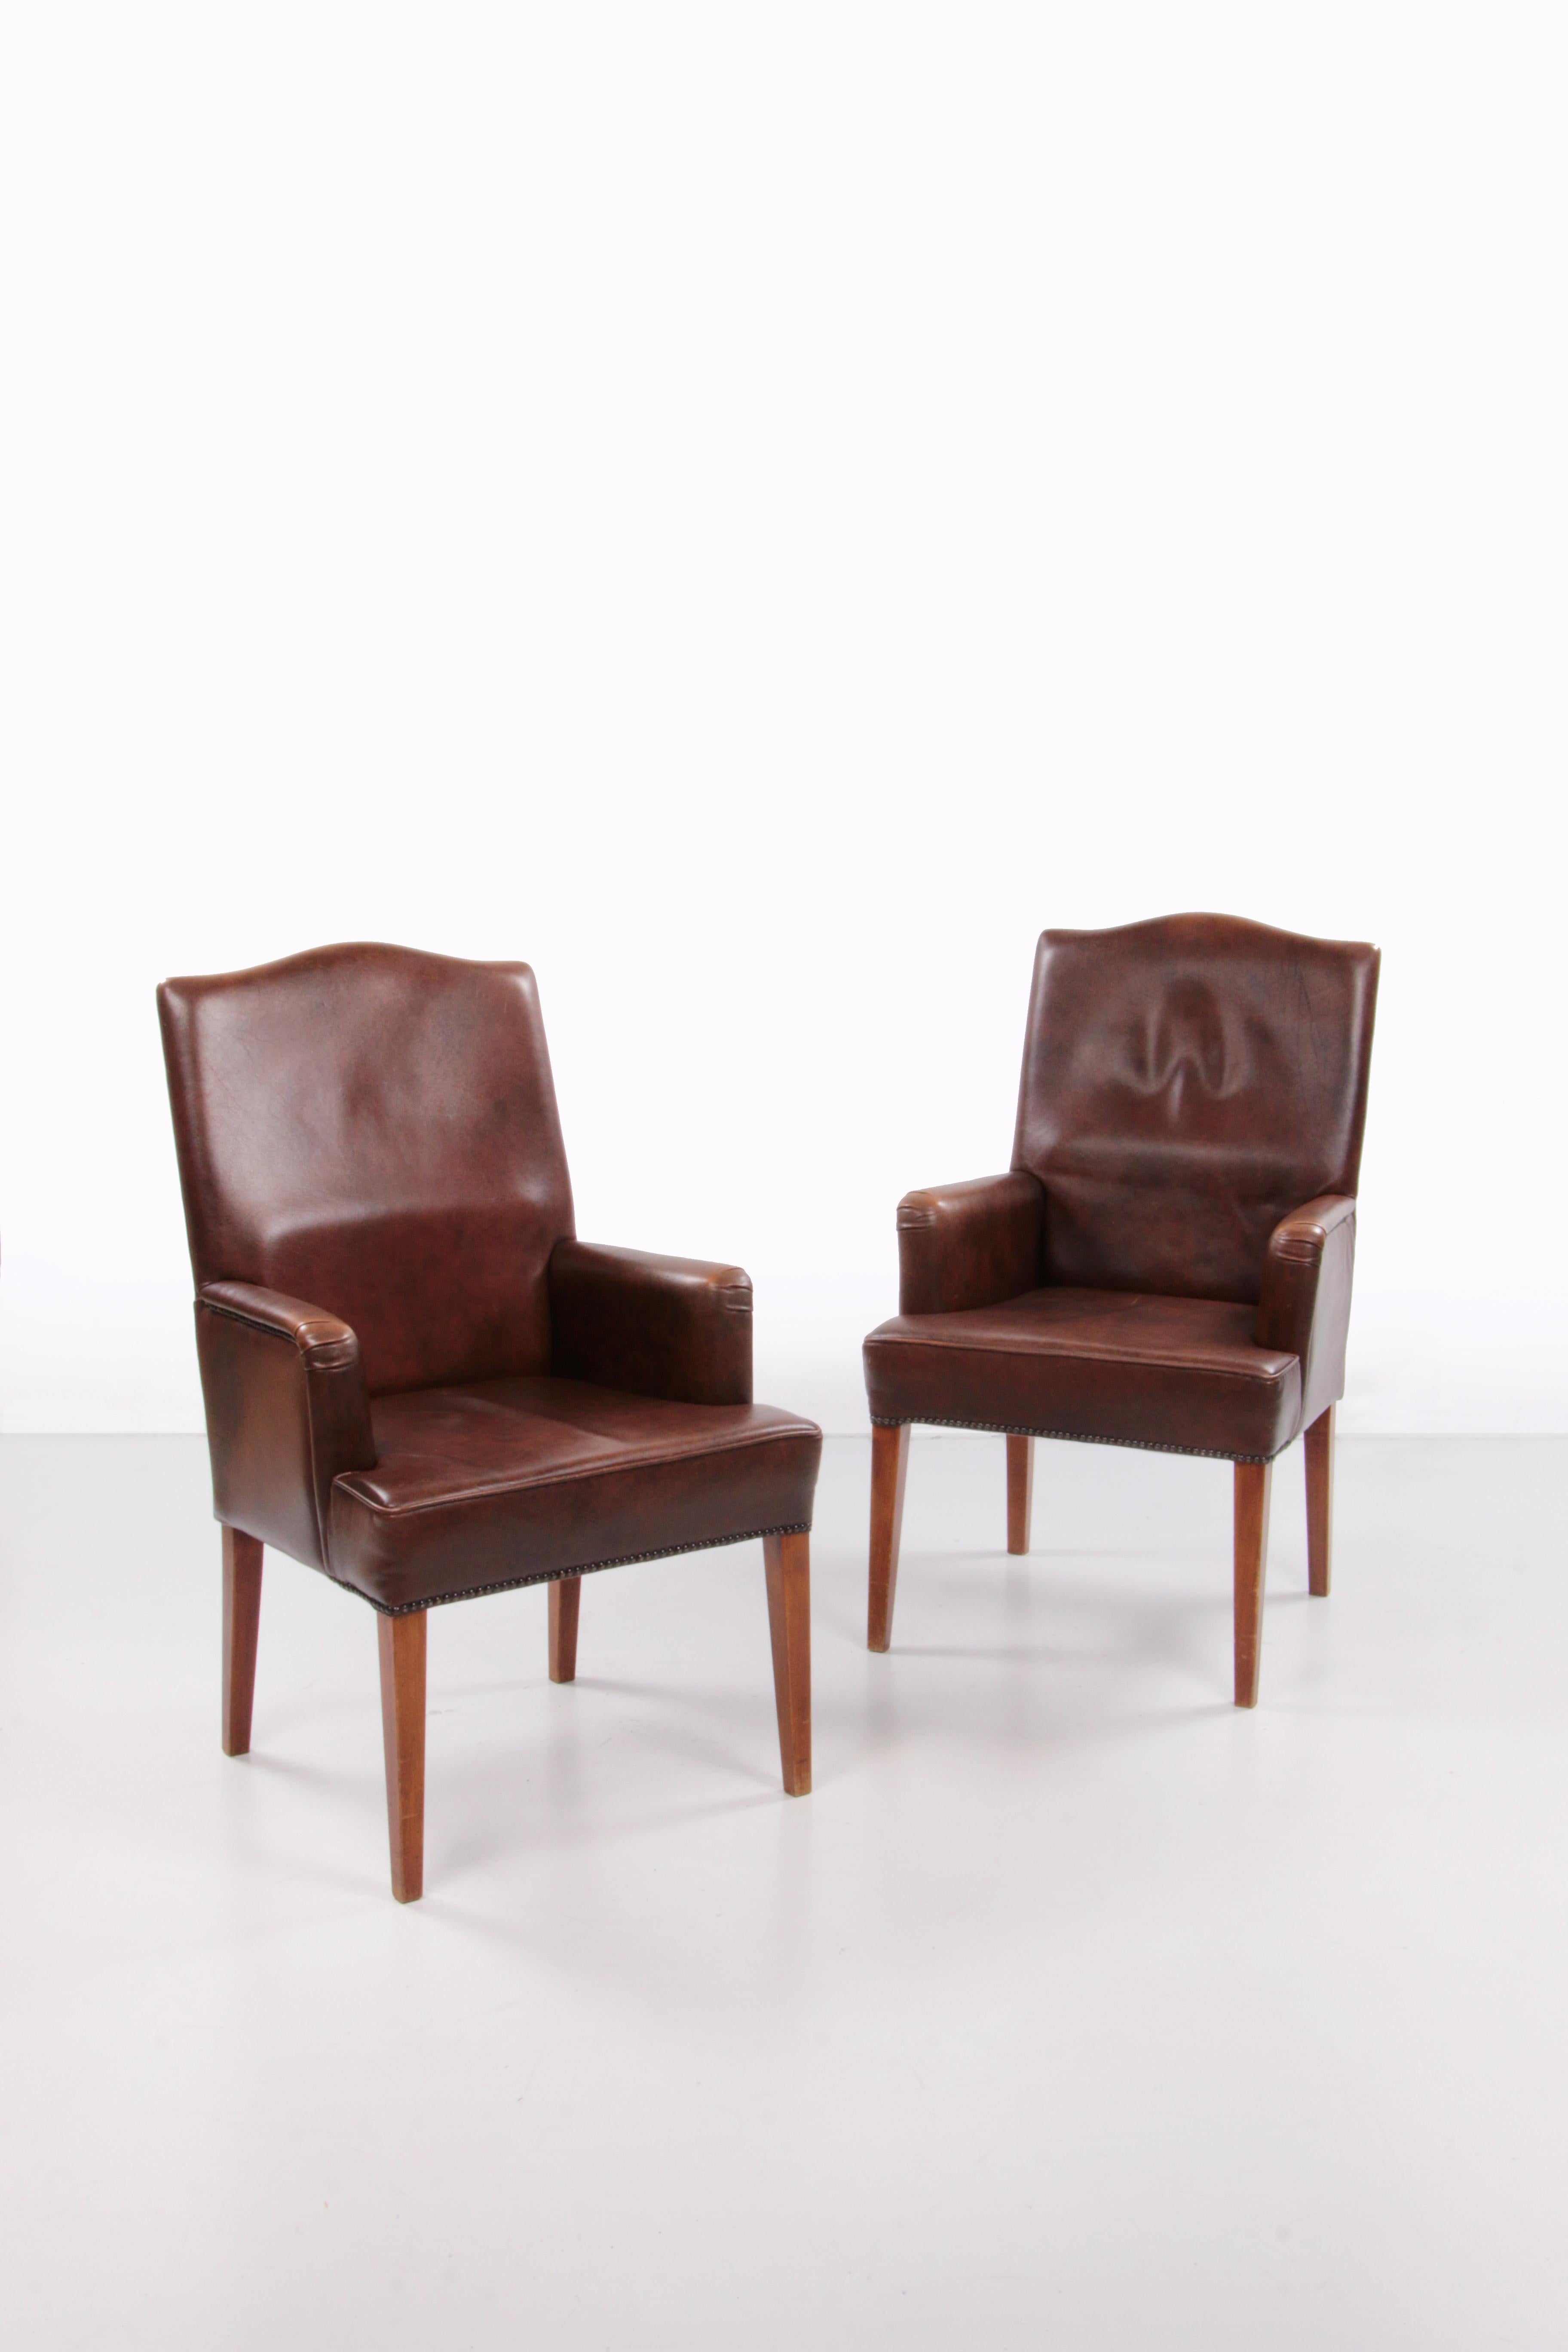 Ensemble de 2 chaises de salle à manger en cuir de mouton, 1970 Pays-Bas.


Il s'agit d'un ensemble de chaises en cuir de mouton.

Fabriqué aux Pays-Bas dans les années 1970. Ces chaises sont en parfait état. La hauteur du siège est de 46 cm.

Cet